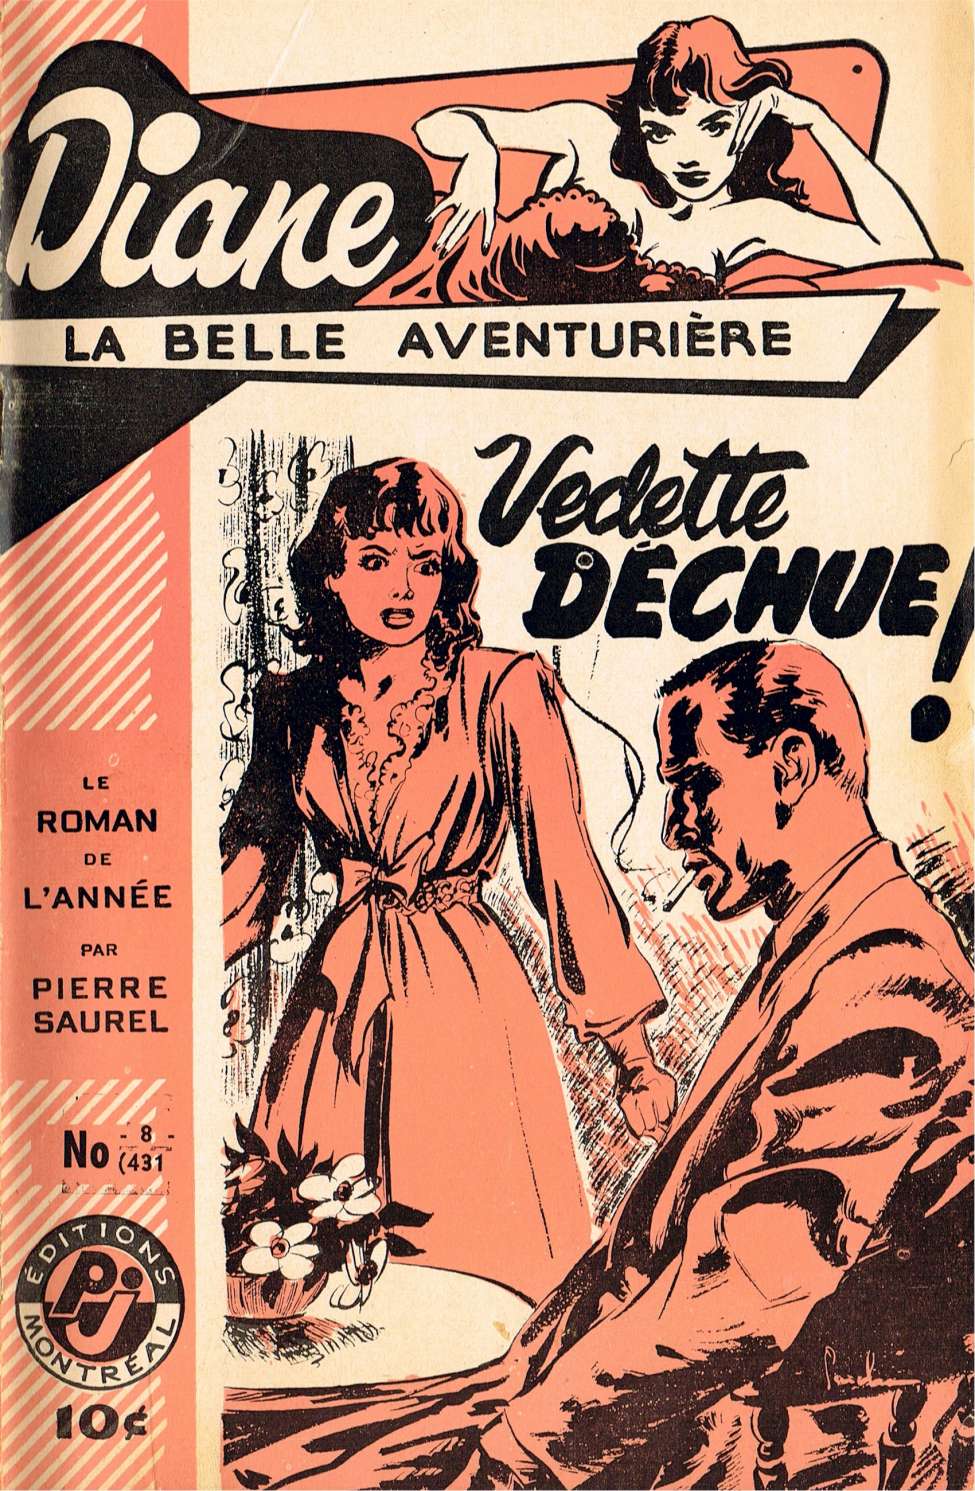 Comic Book Cover For Diane, La Belle Aventuriere 8 - Vedette déchue